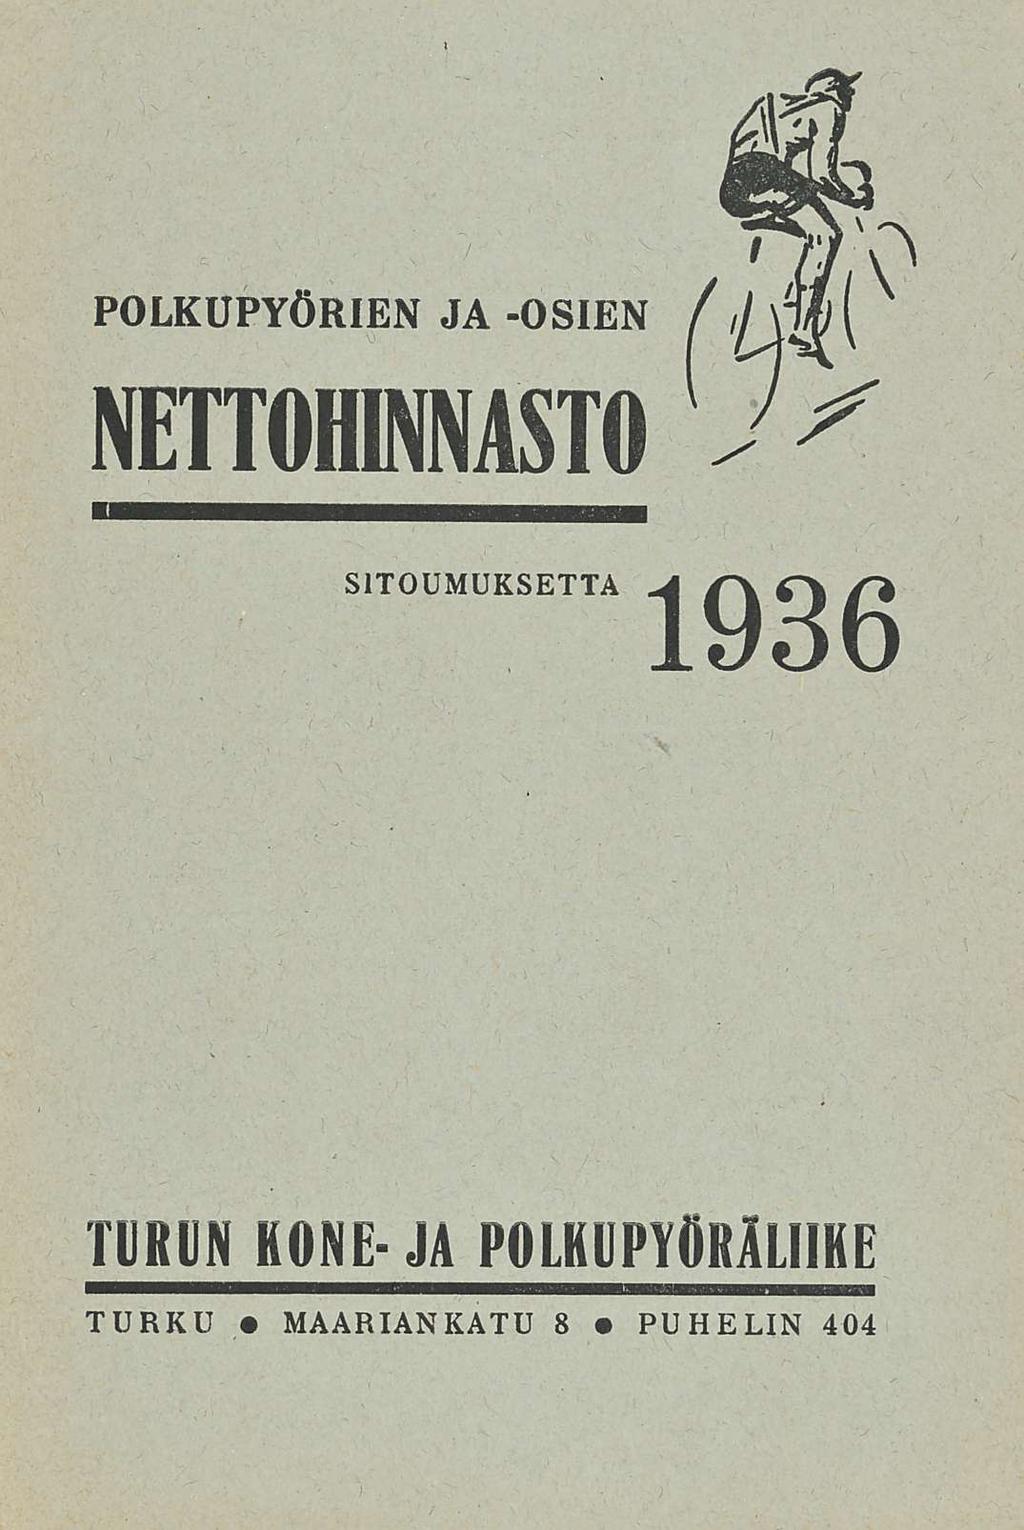 POLKUPYÖRIEN JA -OSIEN NETTOHINNASTO SITOUMUKSETTA 1936